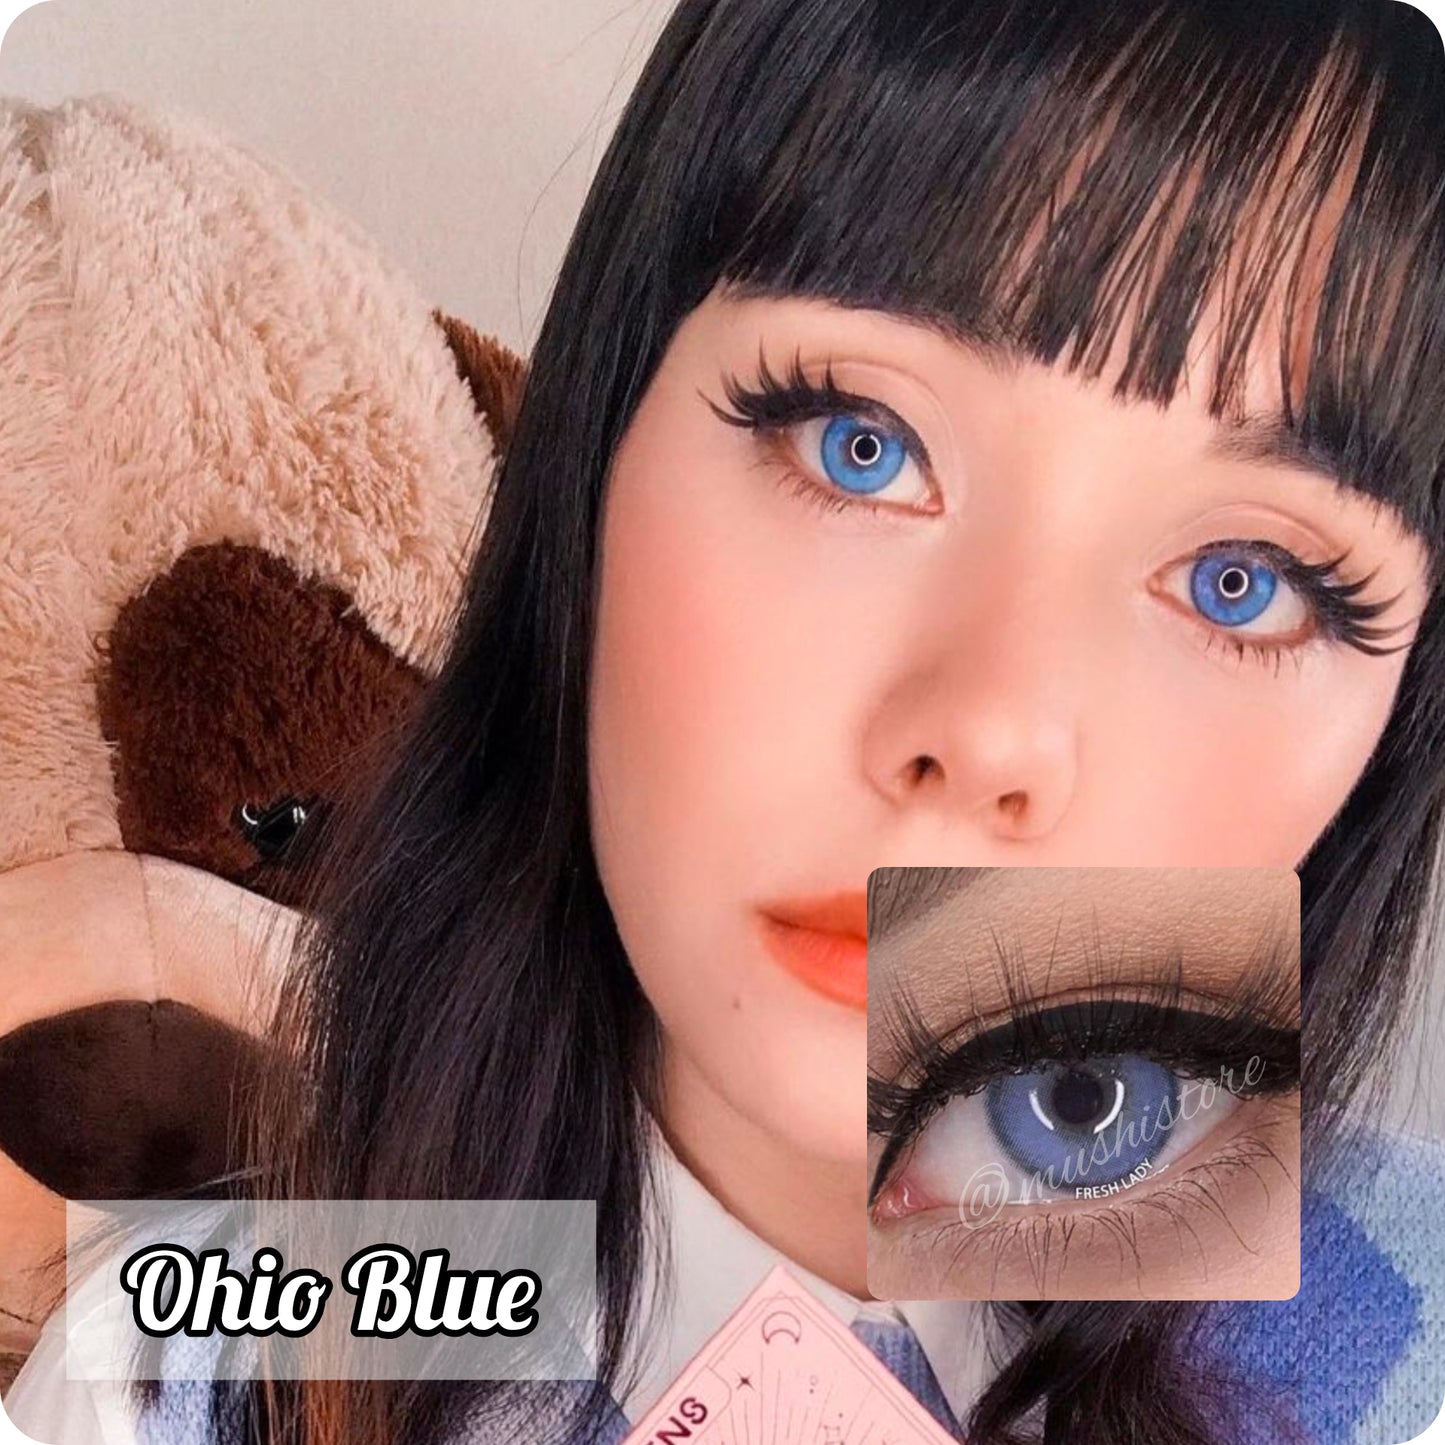 Ohio Blue